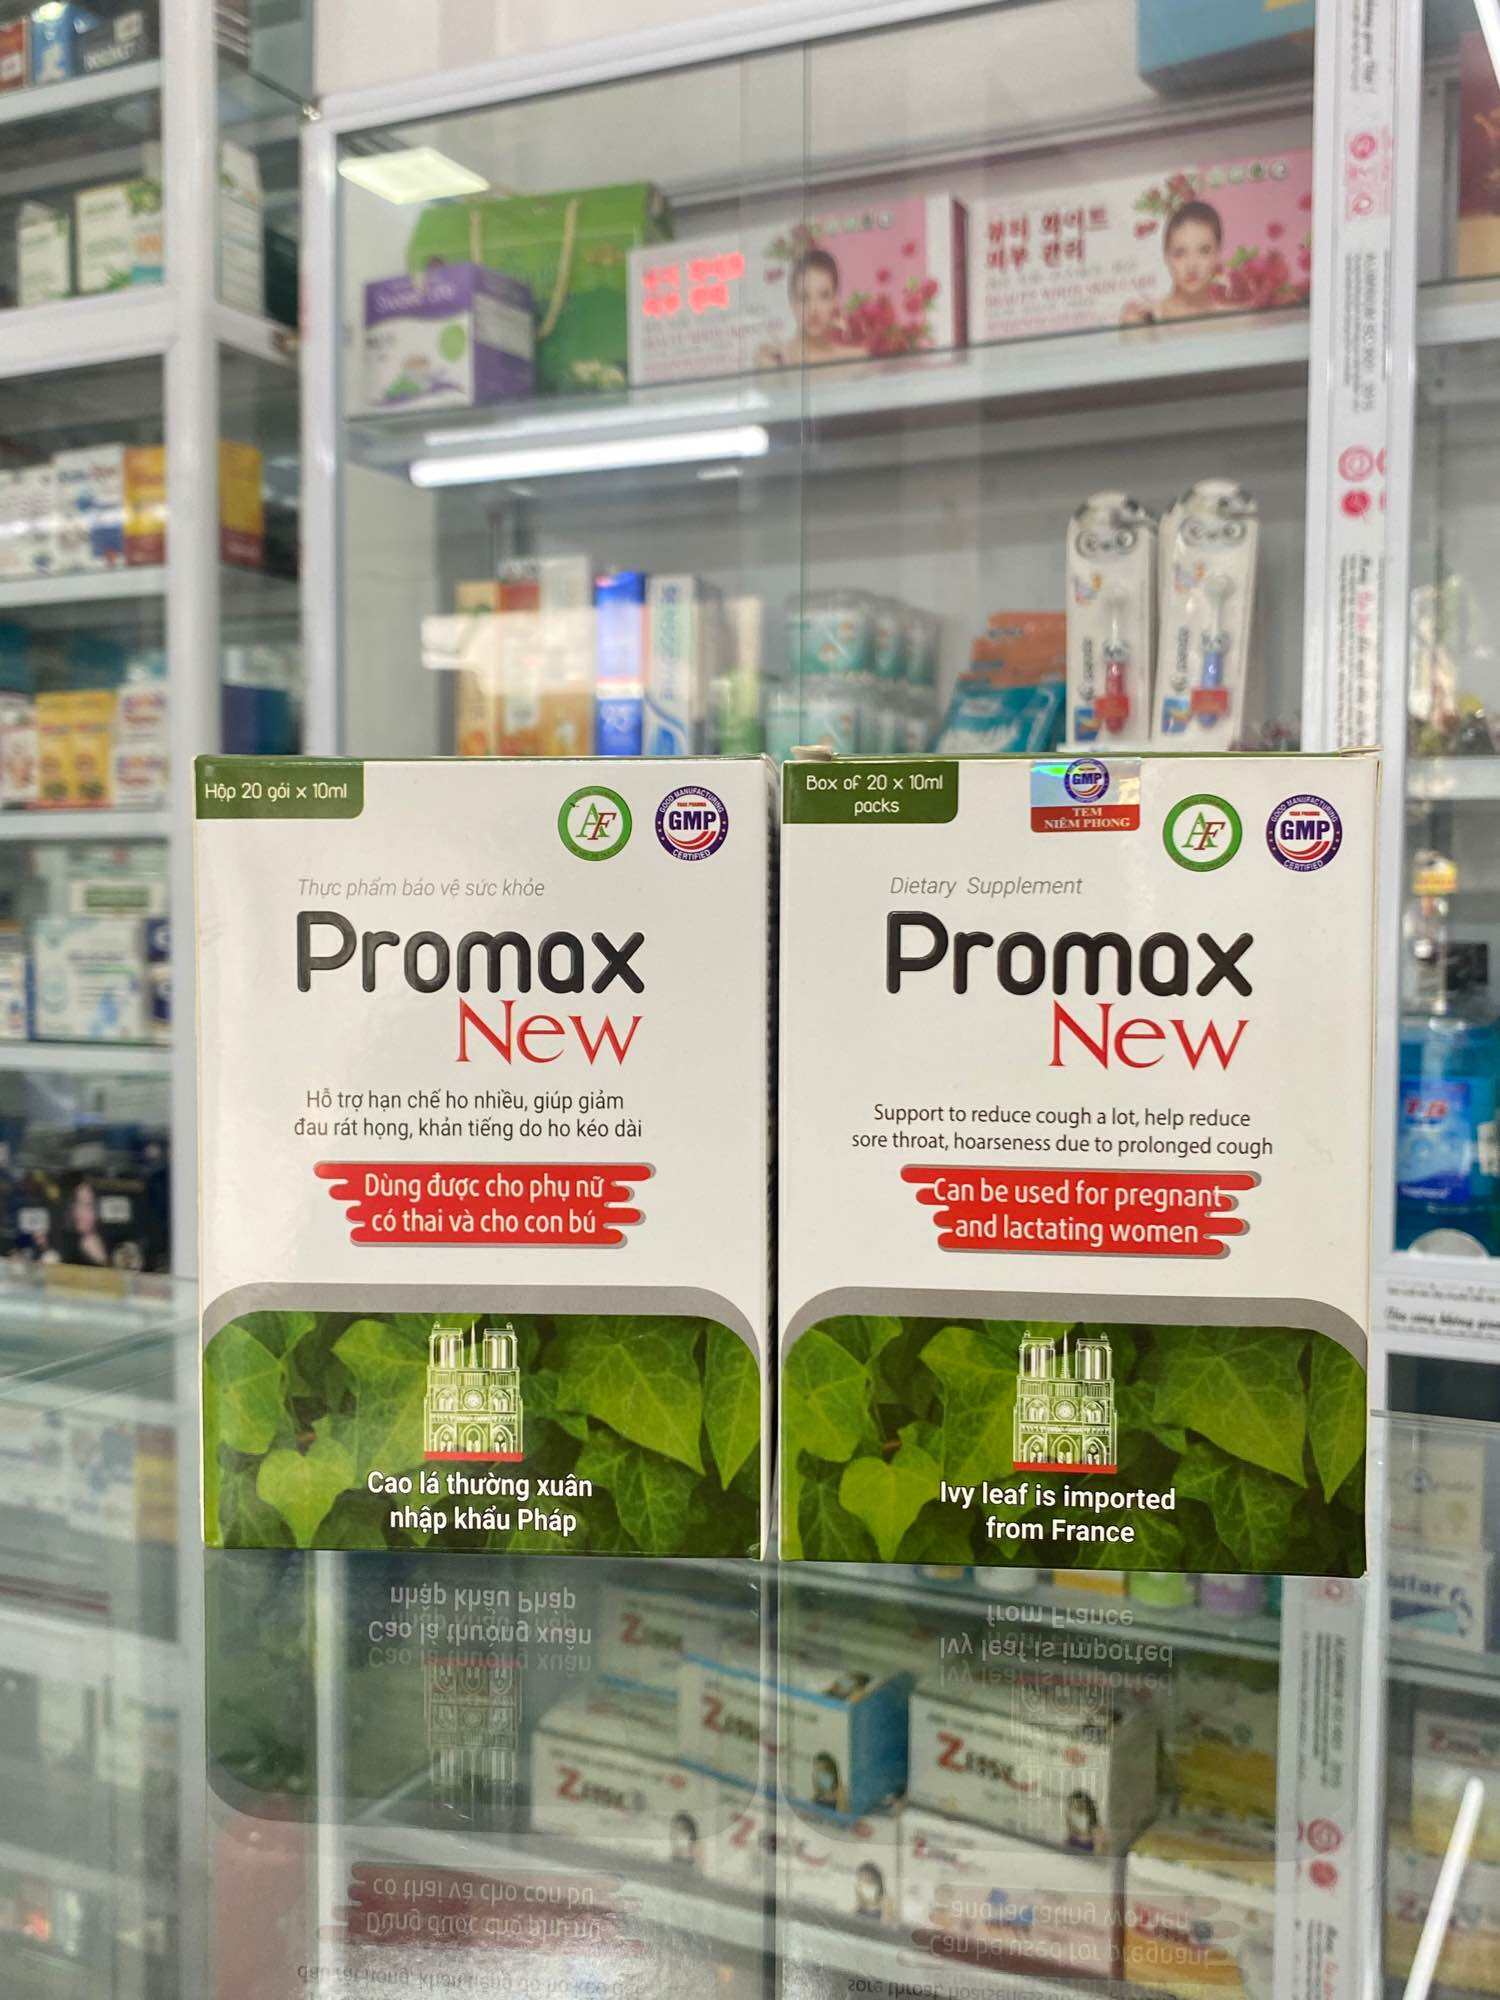 Siro ho Promax new chiết xuất từ cao lá thường xuân, giúp giảm ho hiệu quả